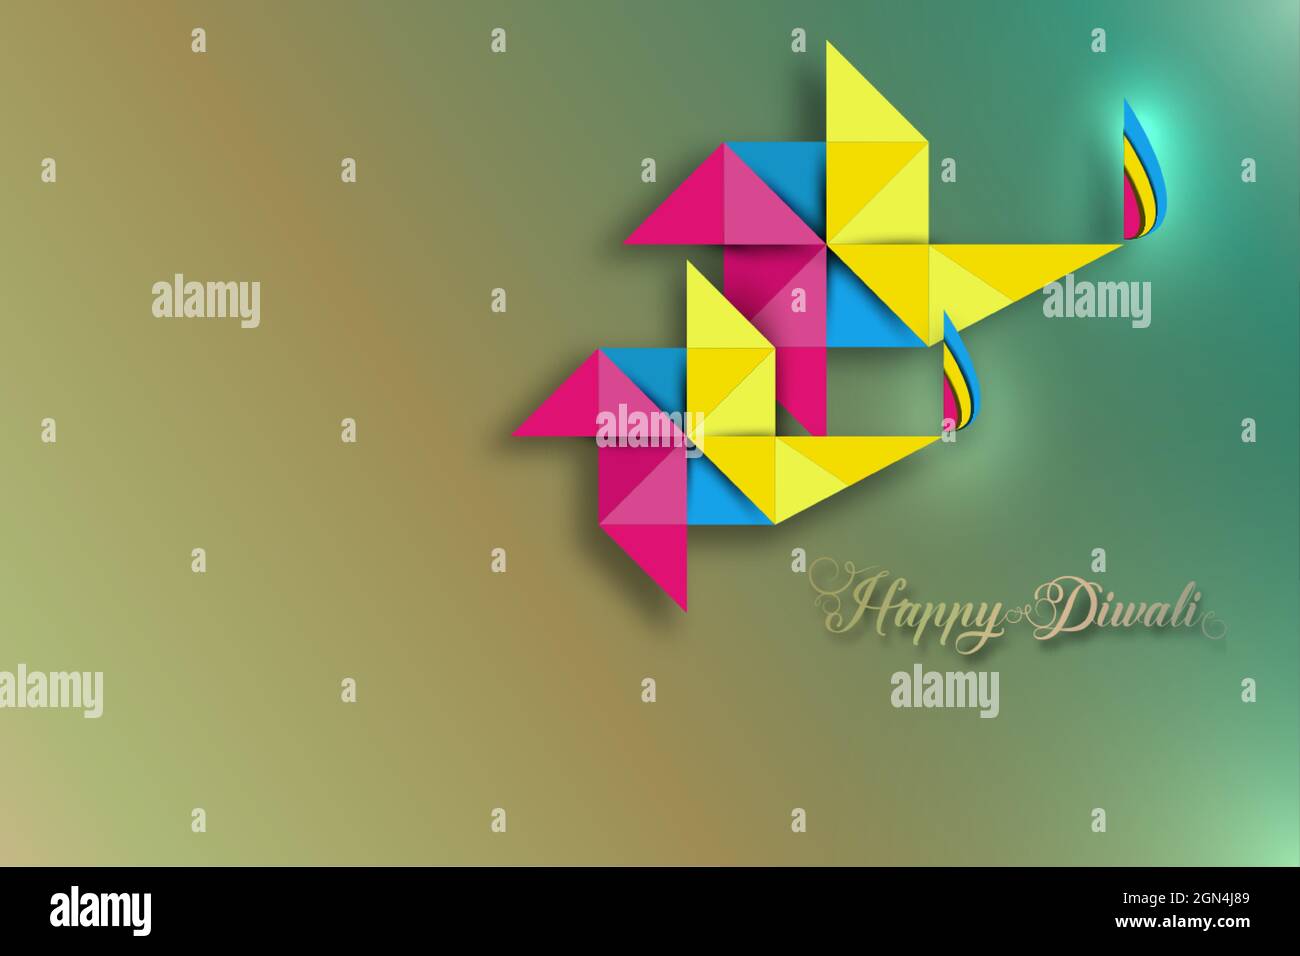 Happy Diwali Festival of Lights Feier Bunte Vorlage aus Origami-Papier Grafikdesign von indischen Diya-Öllampen, modernes Flachdesign. Vektorverbot Stock Vektor